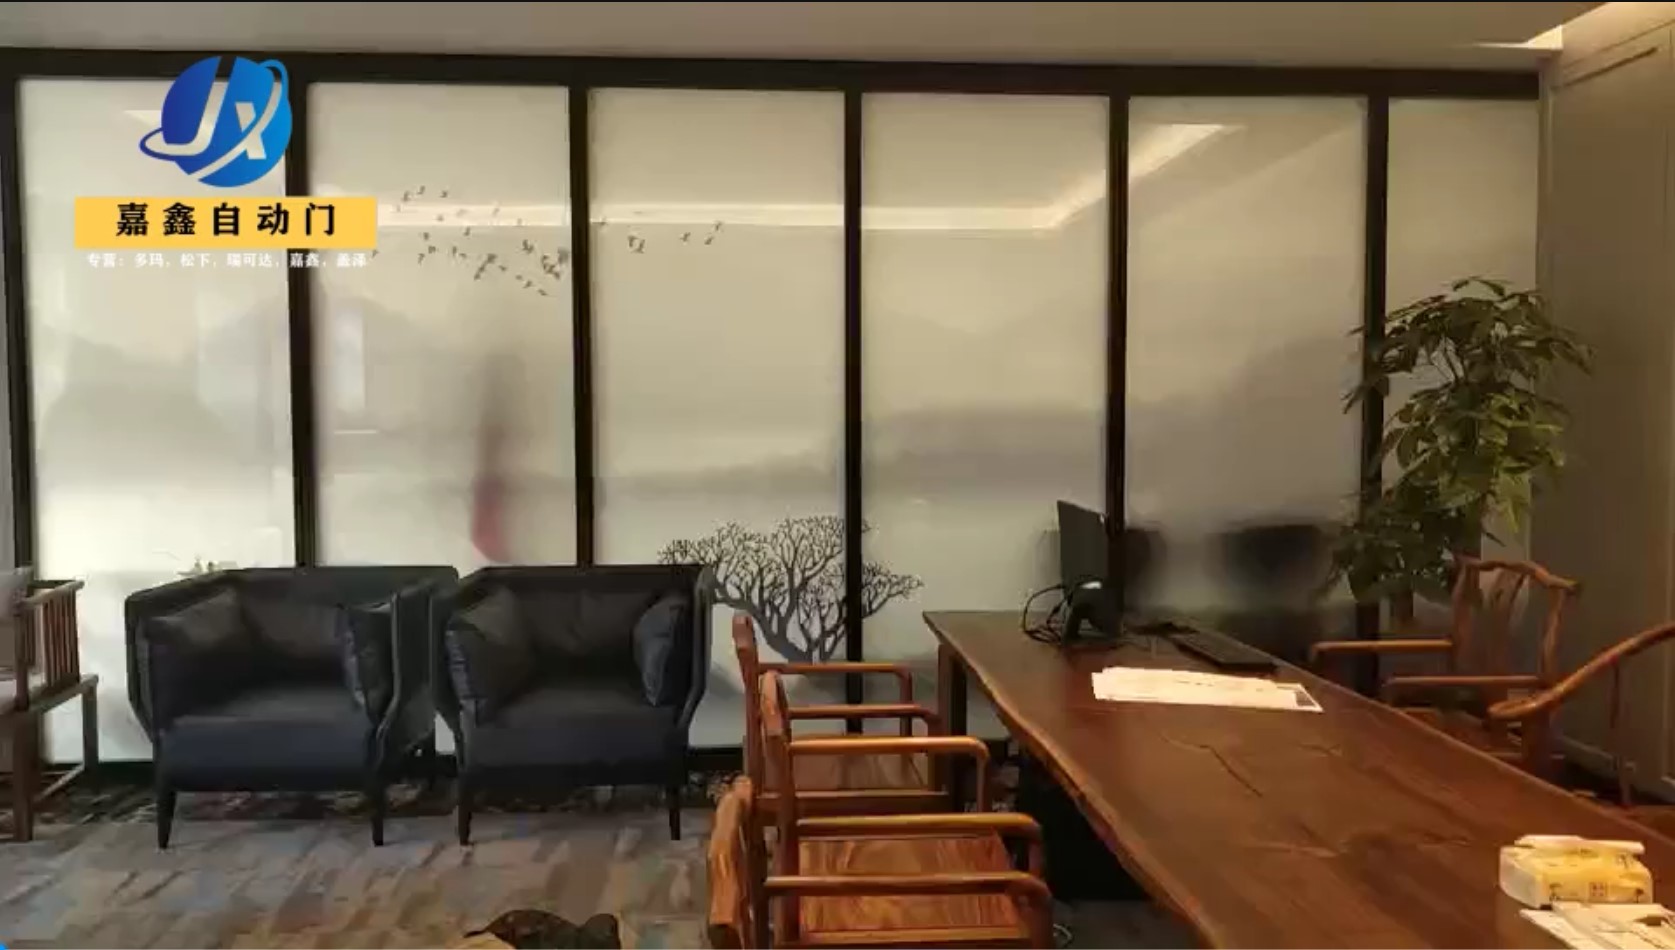 珠海通电雾化玻璃在办公室的案例